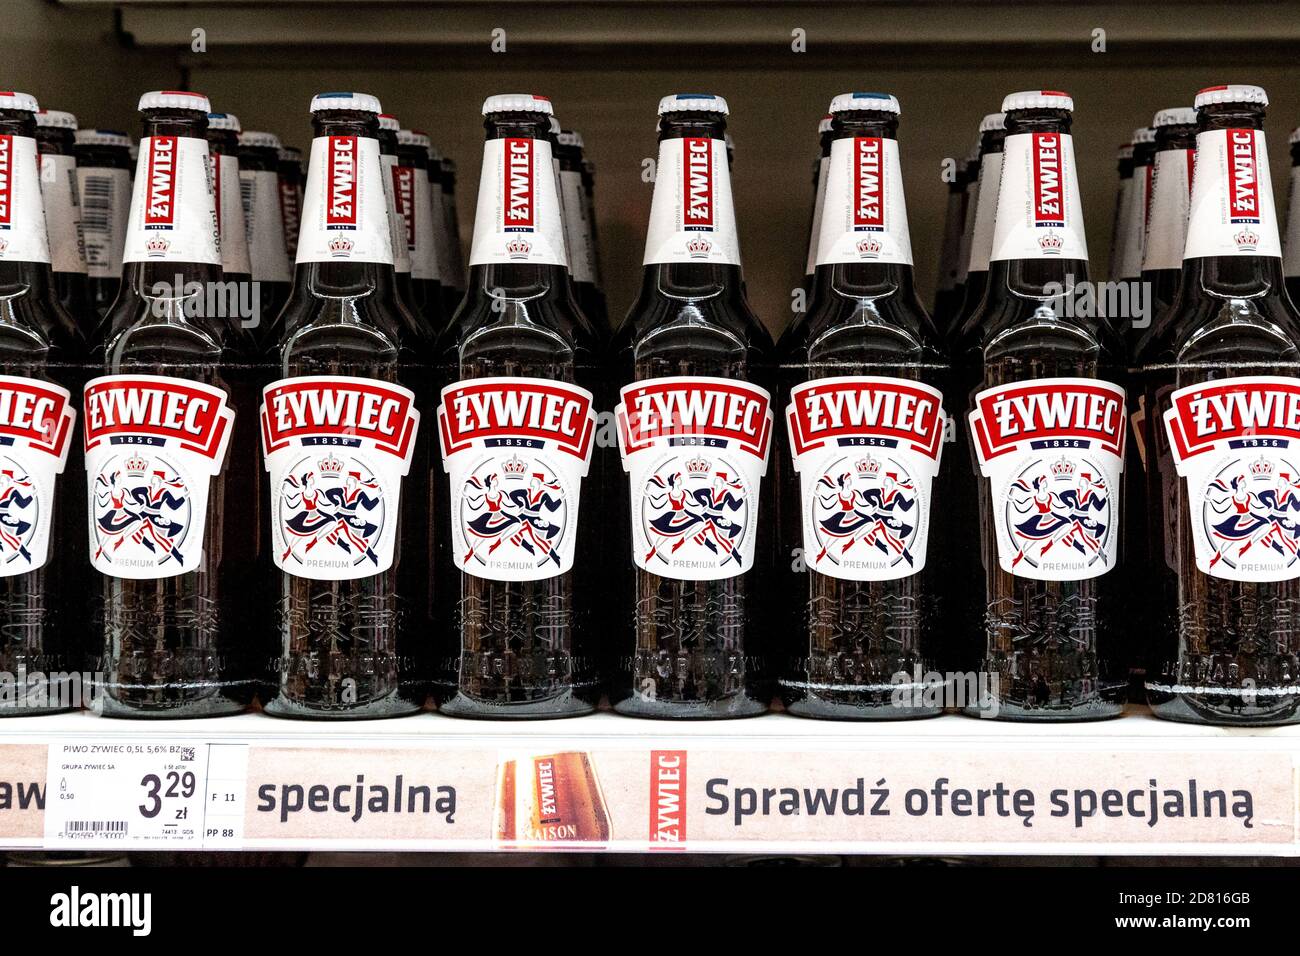 Polnisches Bier Zywiec auf einem Regal im Supermarkt Stockfoto